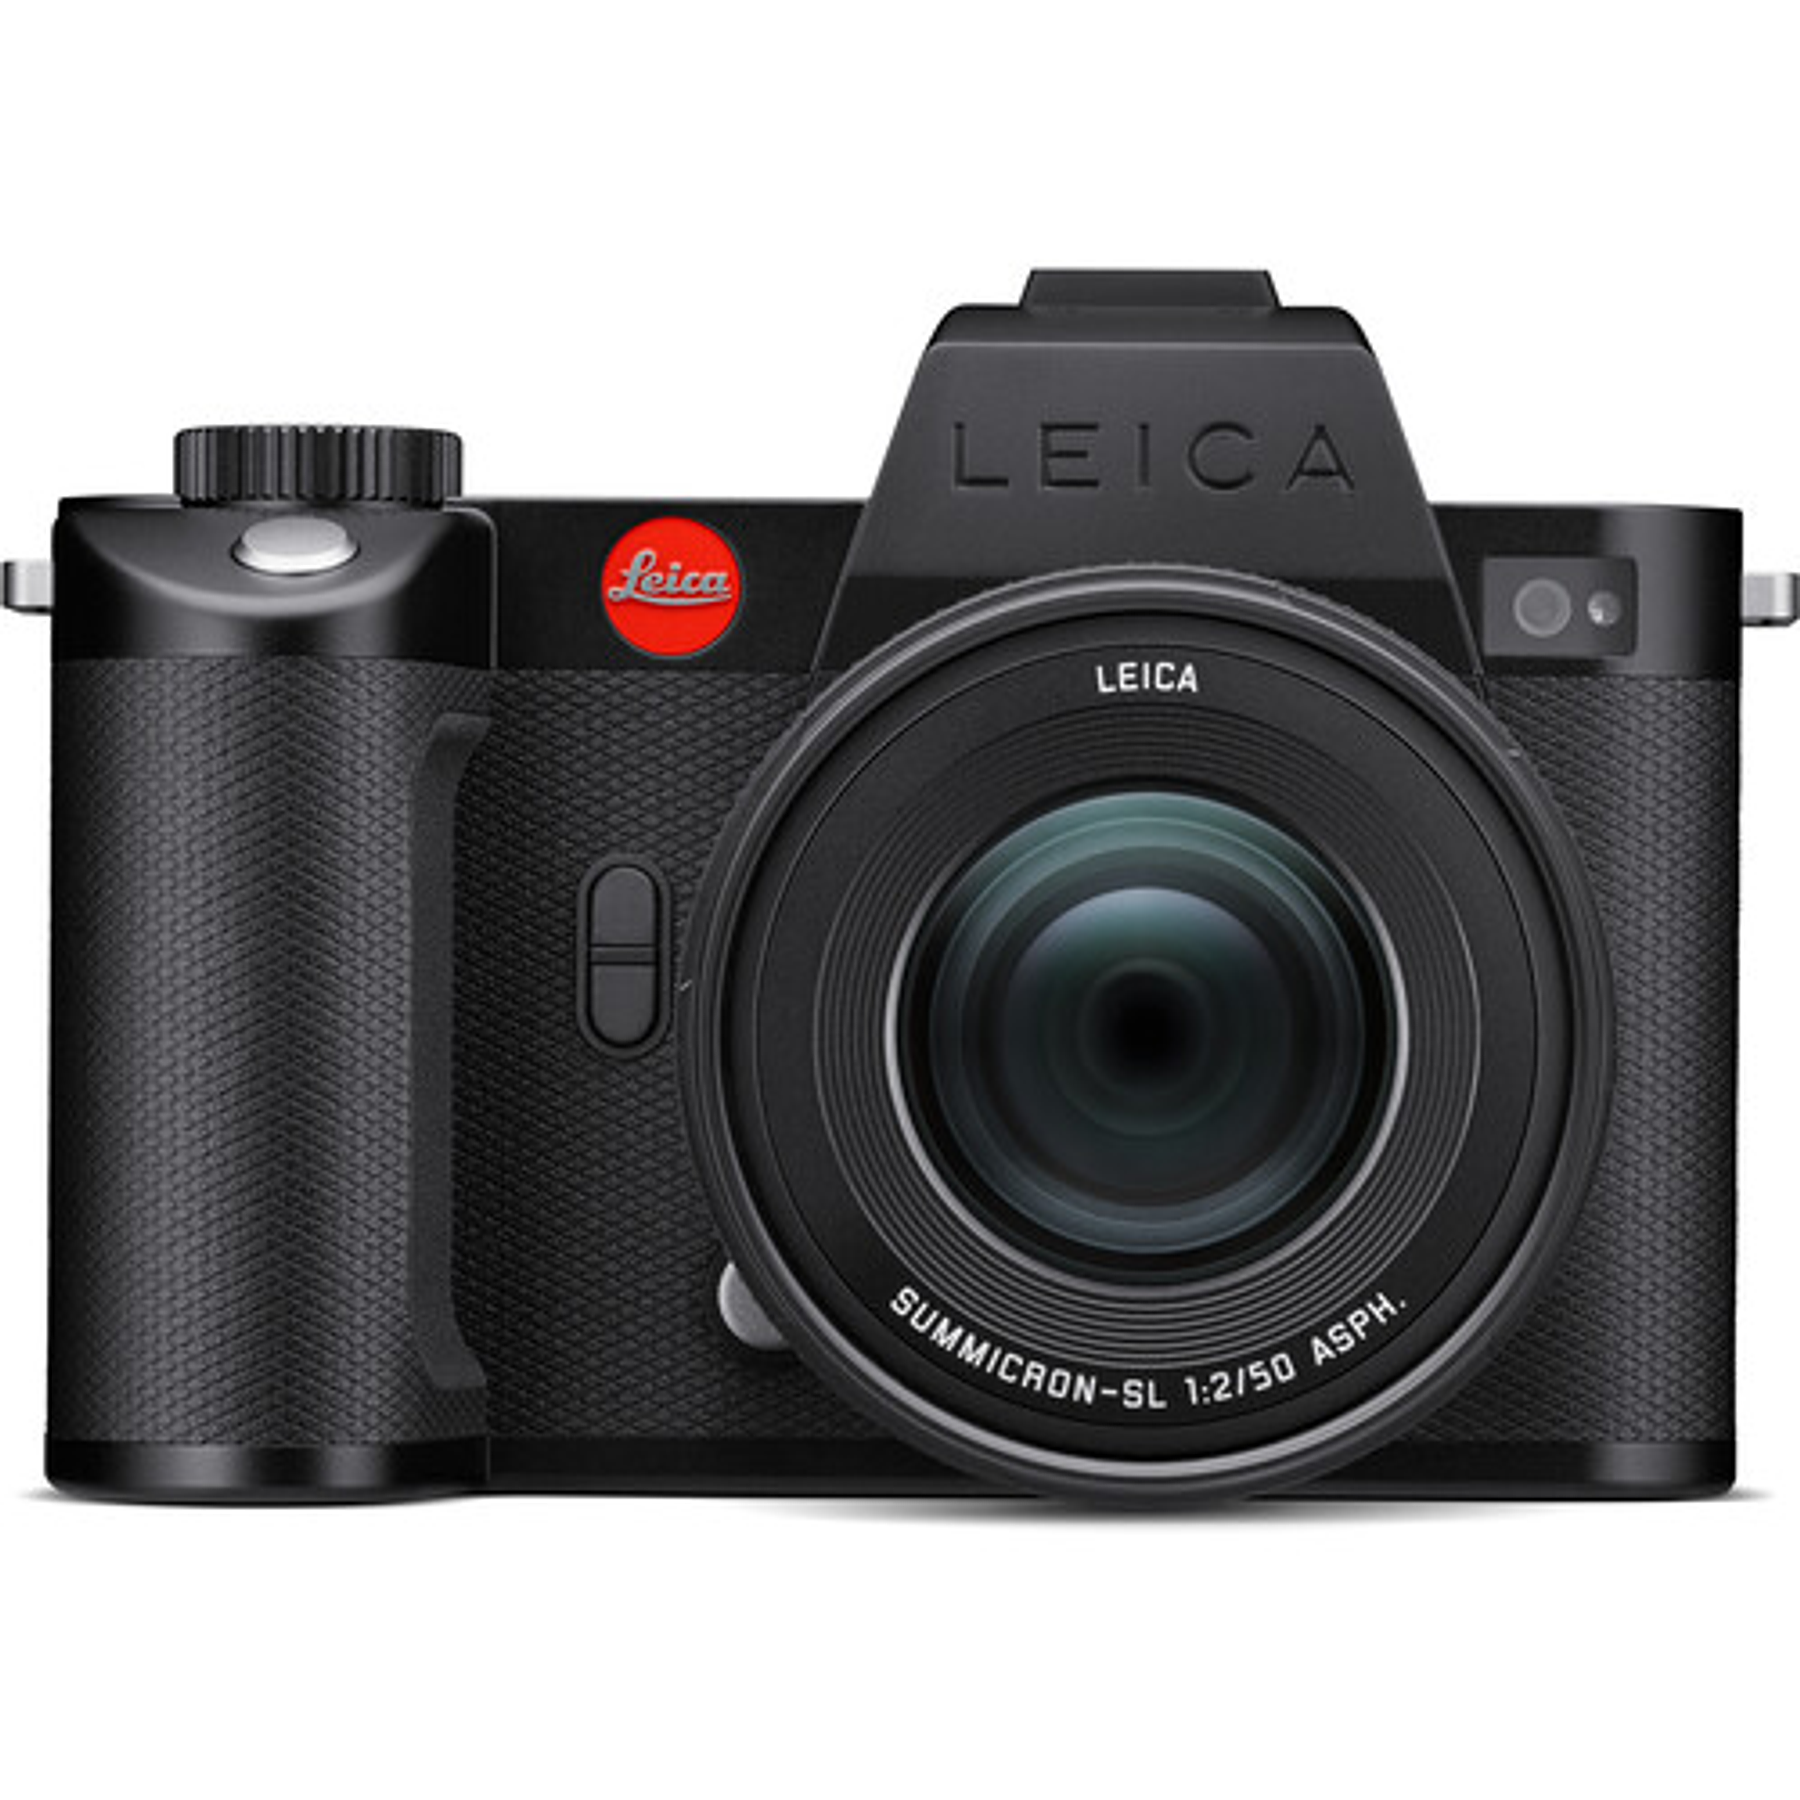 Leica Summicron-SL 50mm f/2 ASPH (L-Mount)